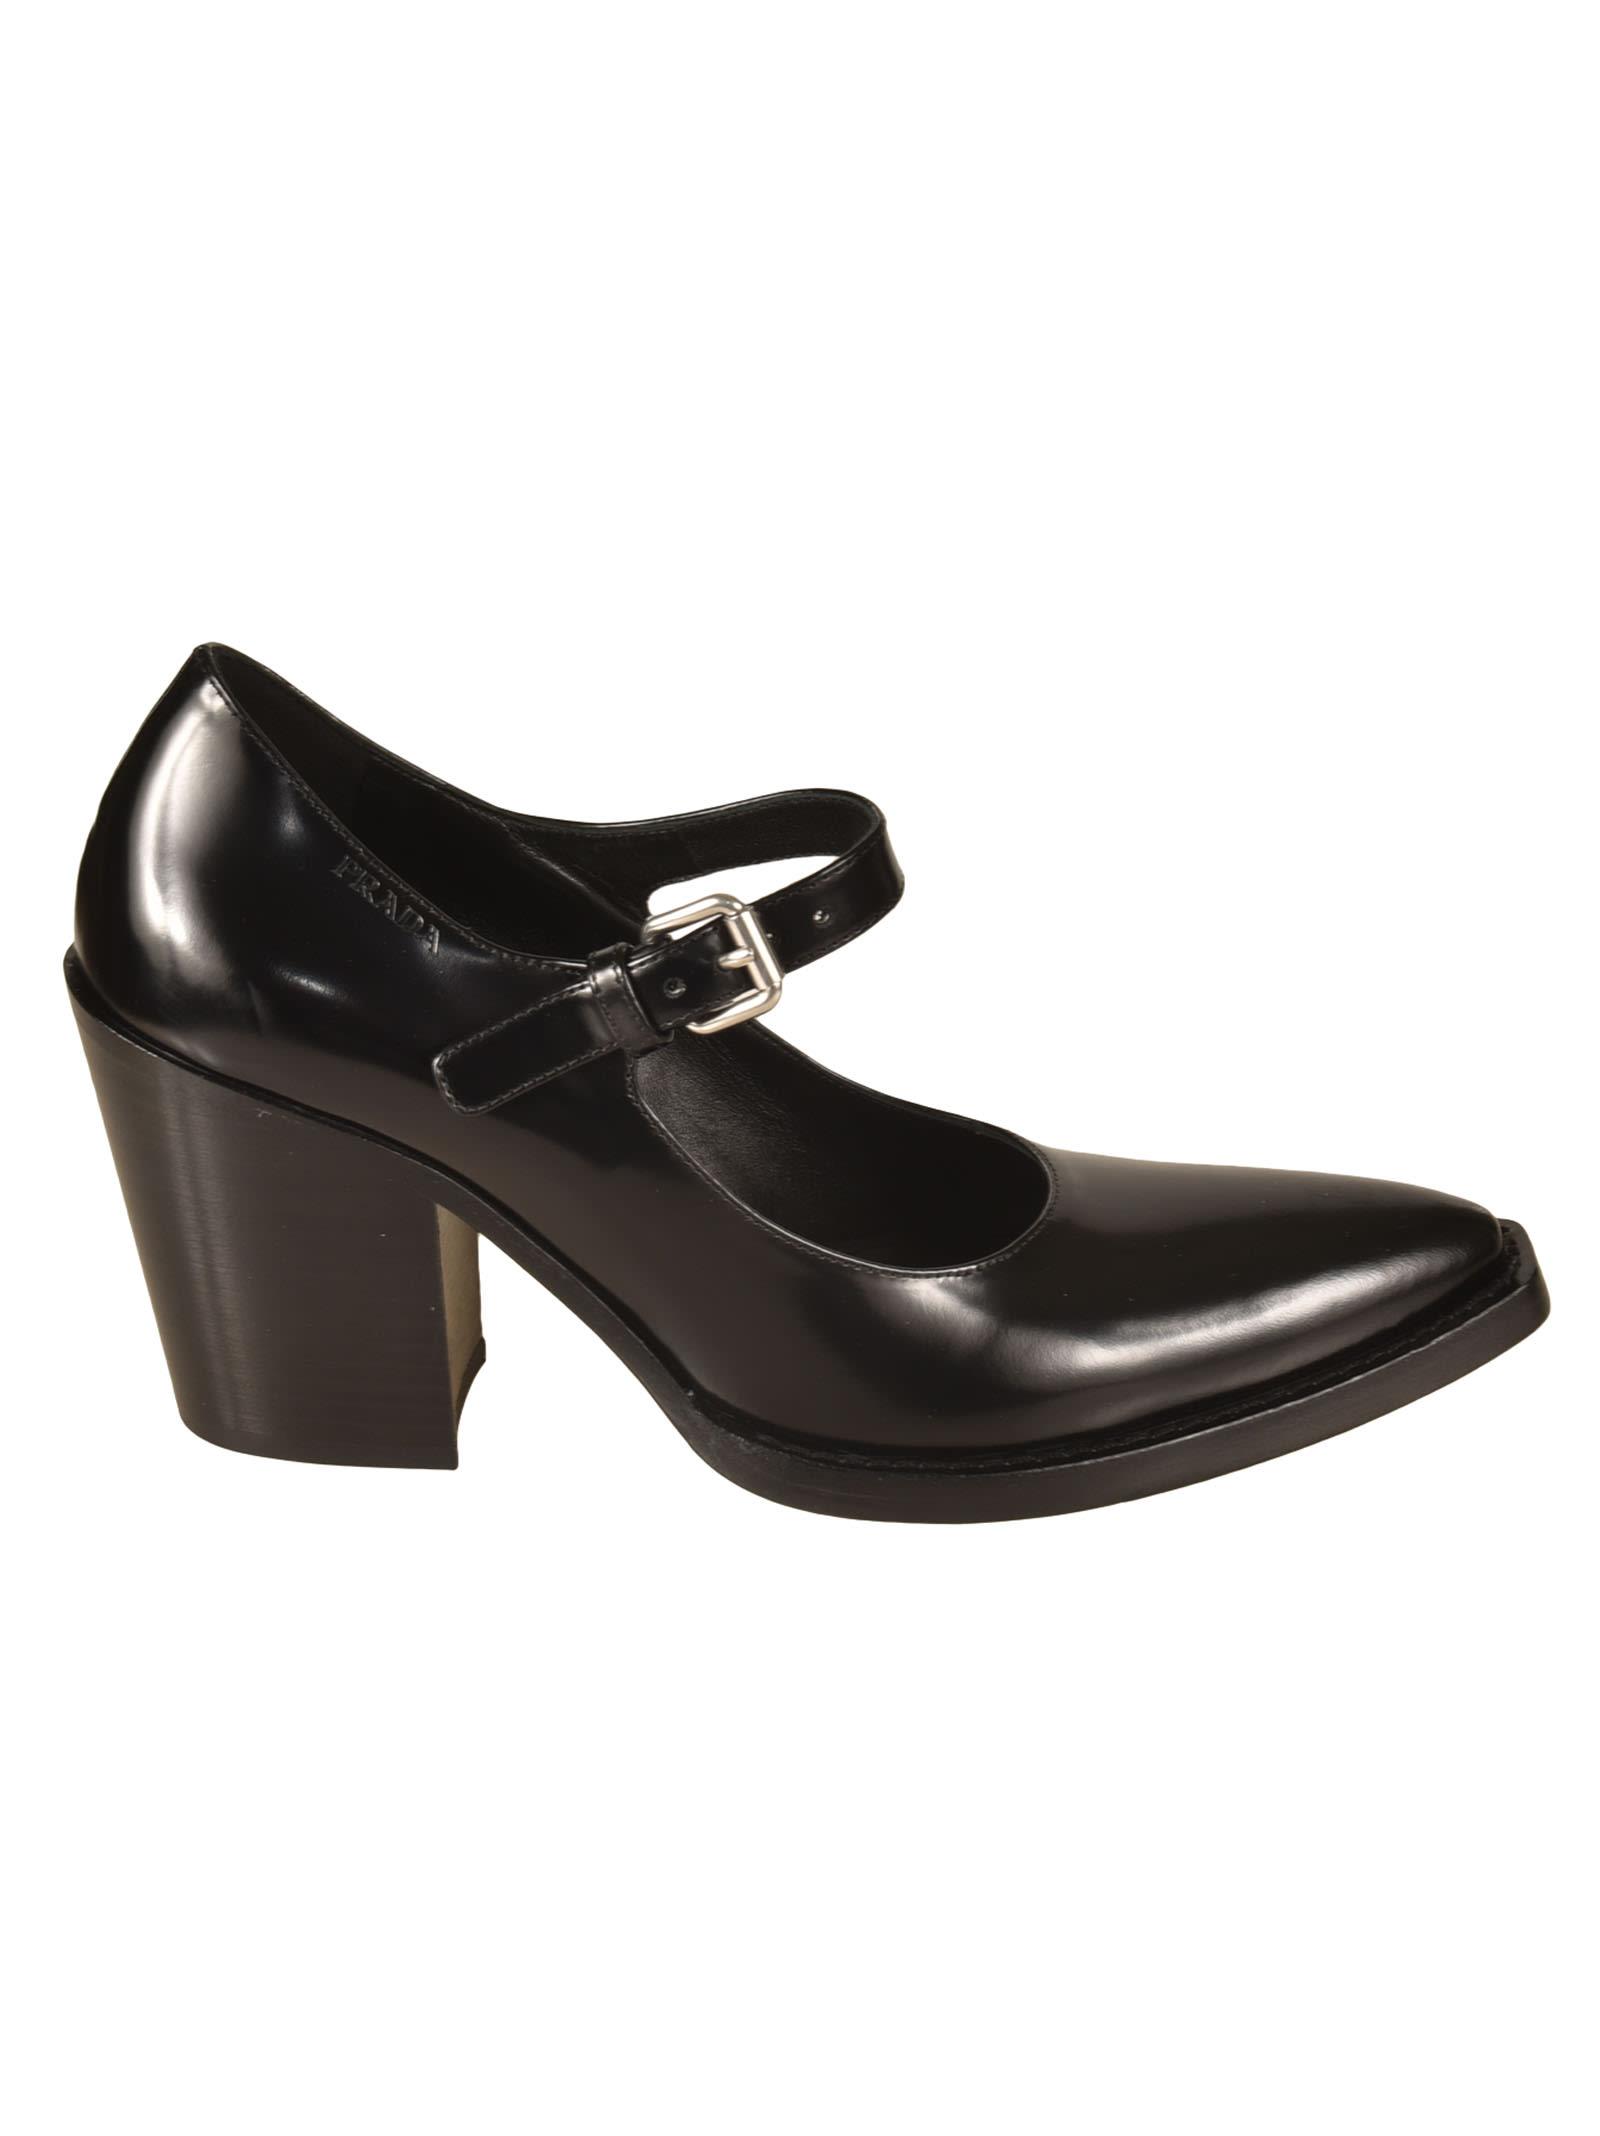 Prada Pointed Toe Block-heel Pumps in Black | Lyst